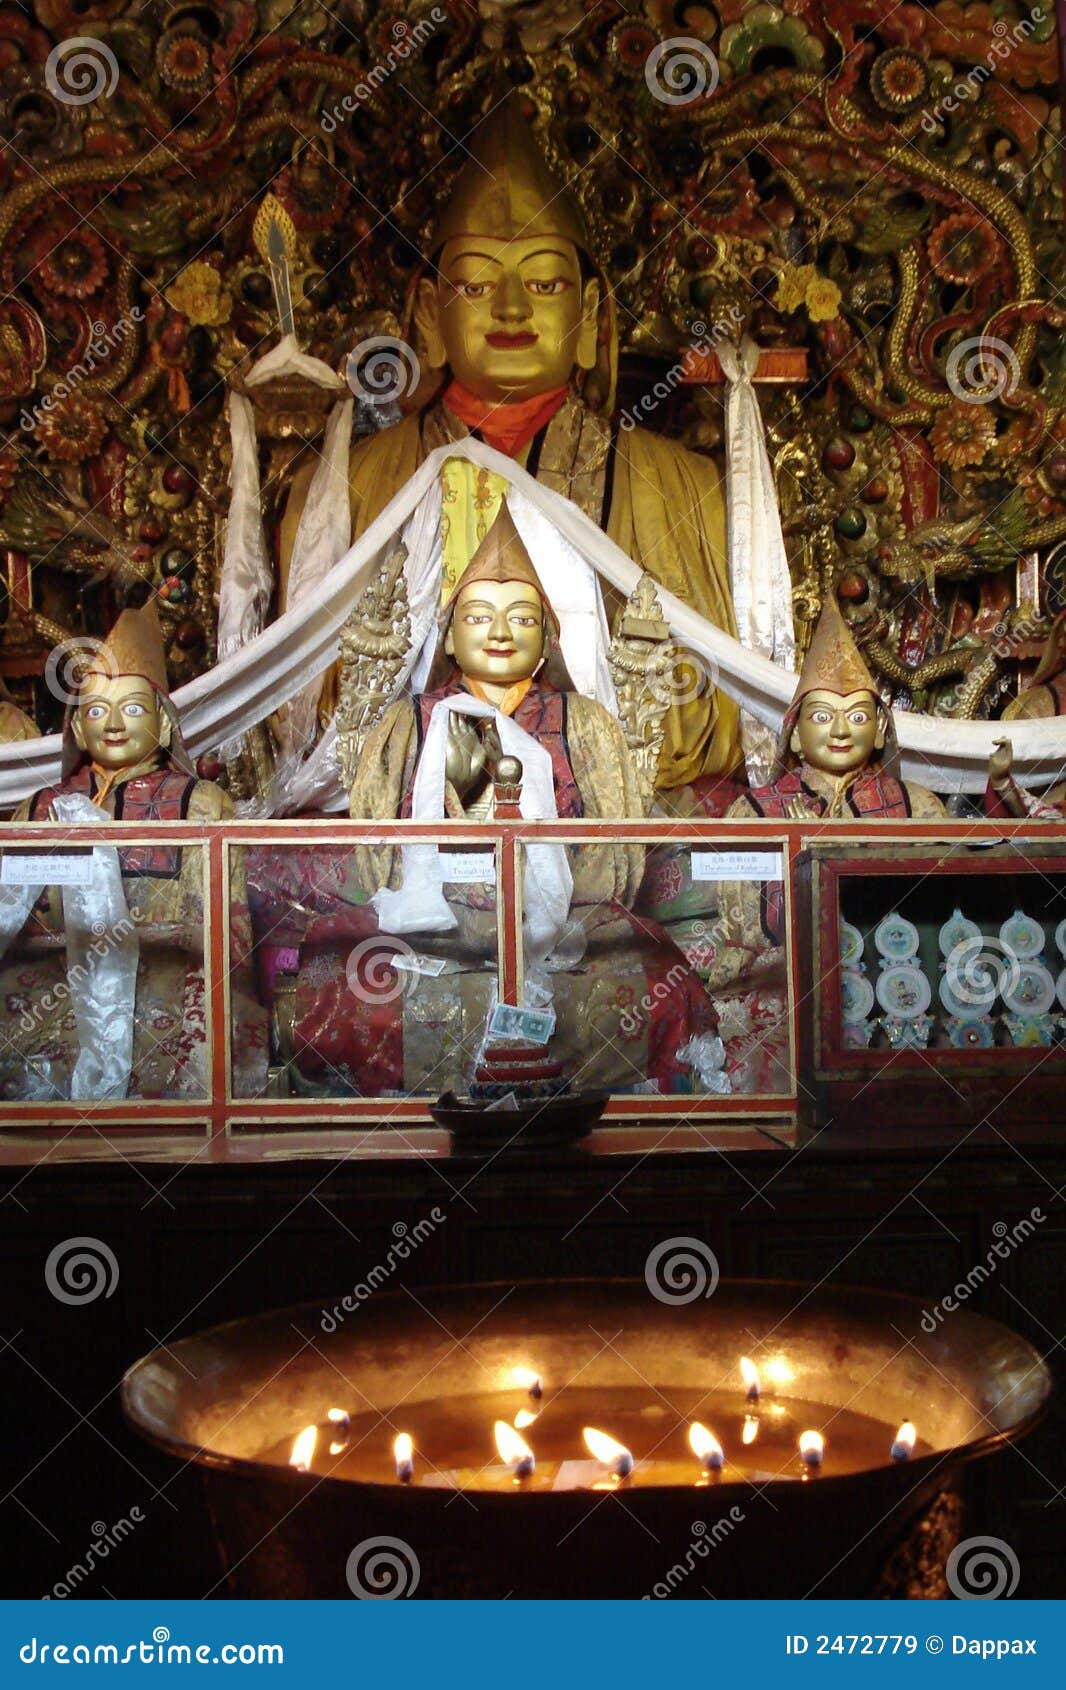 the great fifth dalai lama